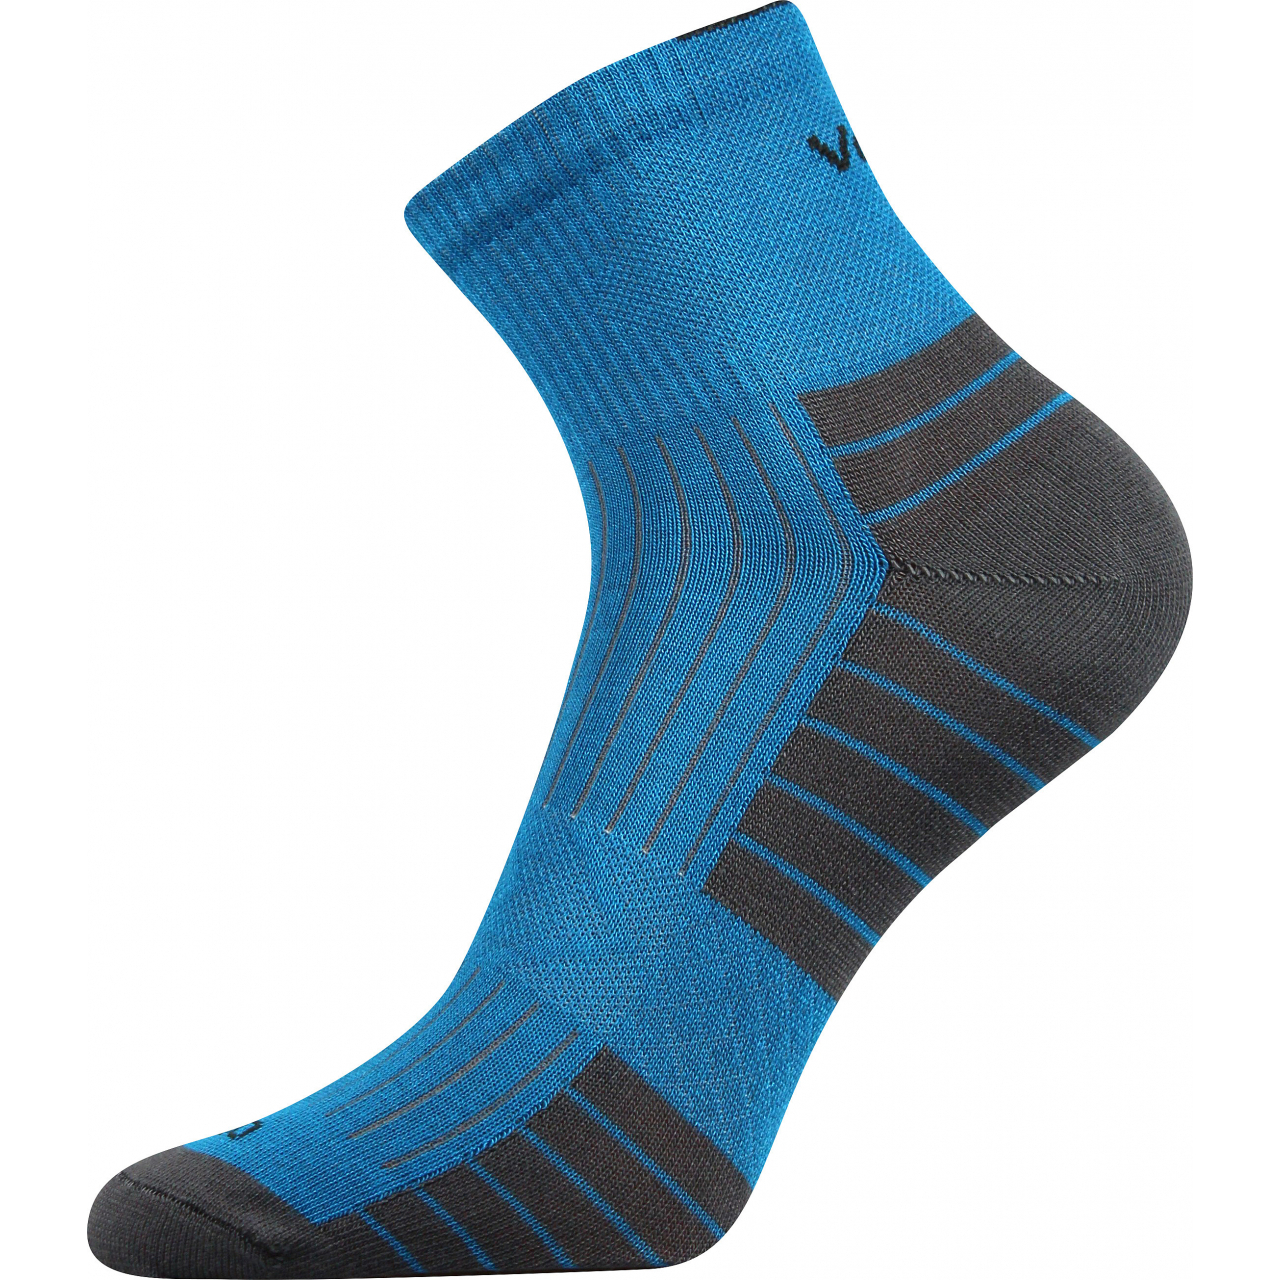 Ponožky bambusové unisex Voxx Belkin - modré-šedé, 39-42